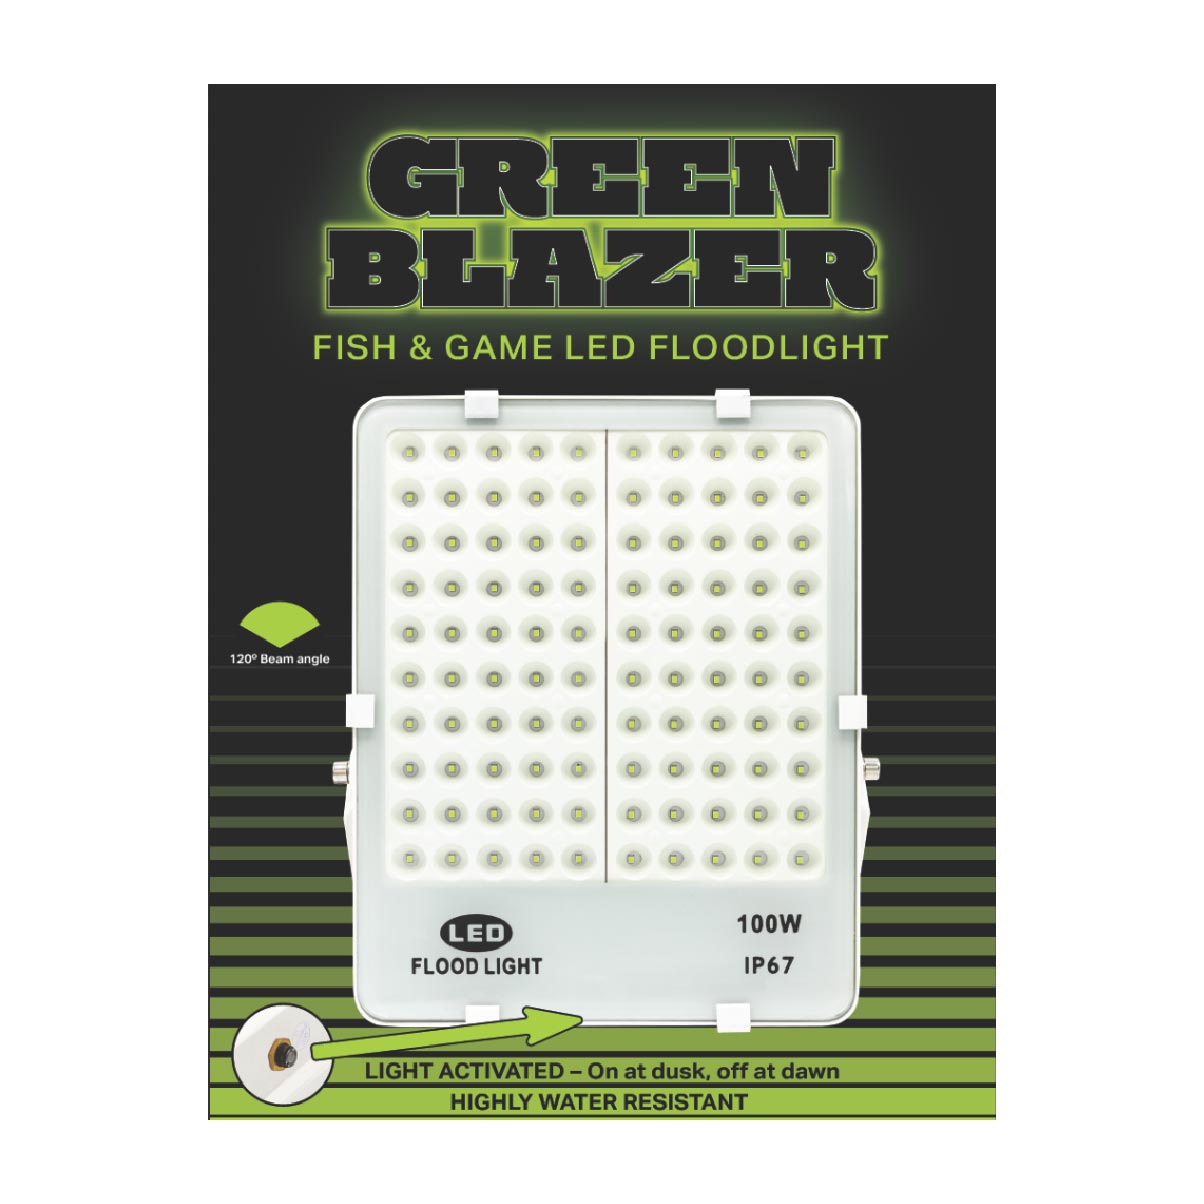 Rite Angler Green Blazer LED floodlight box front